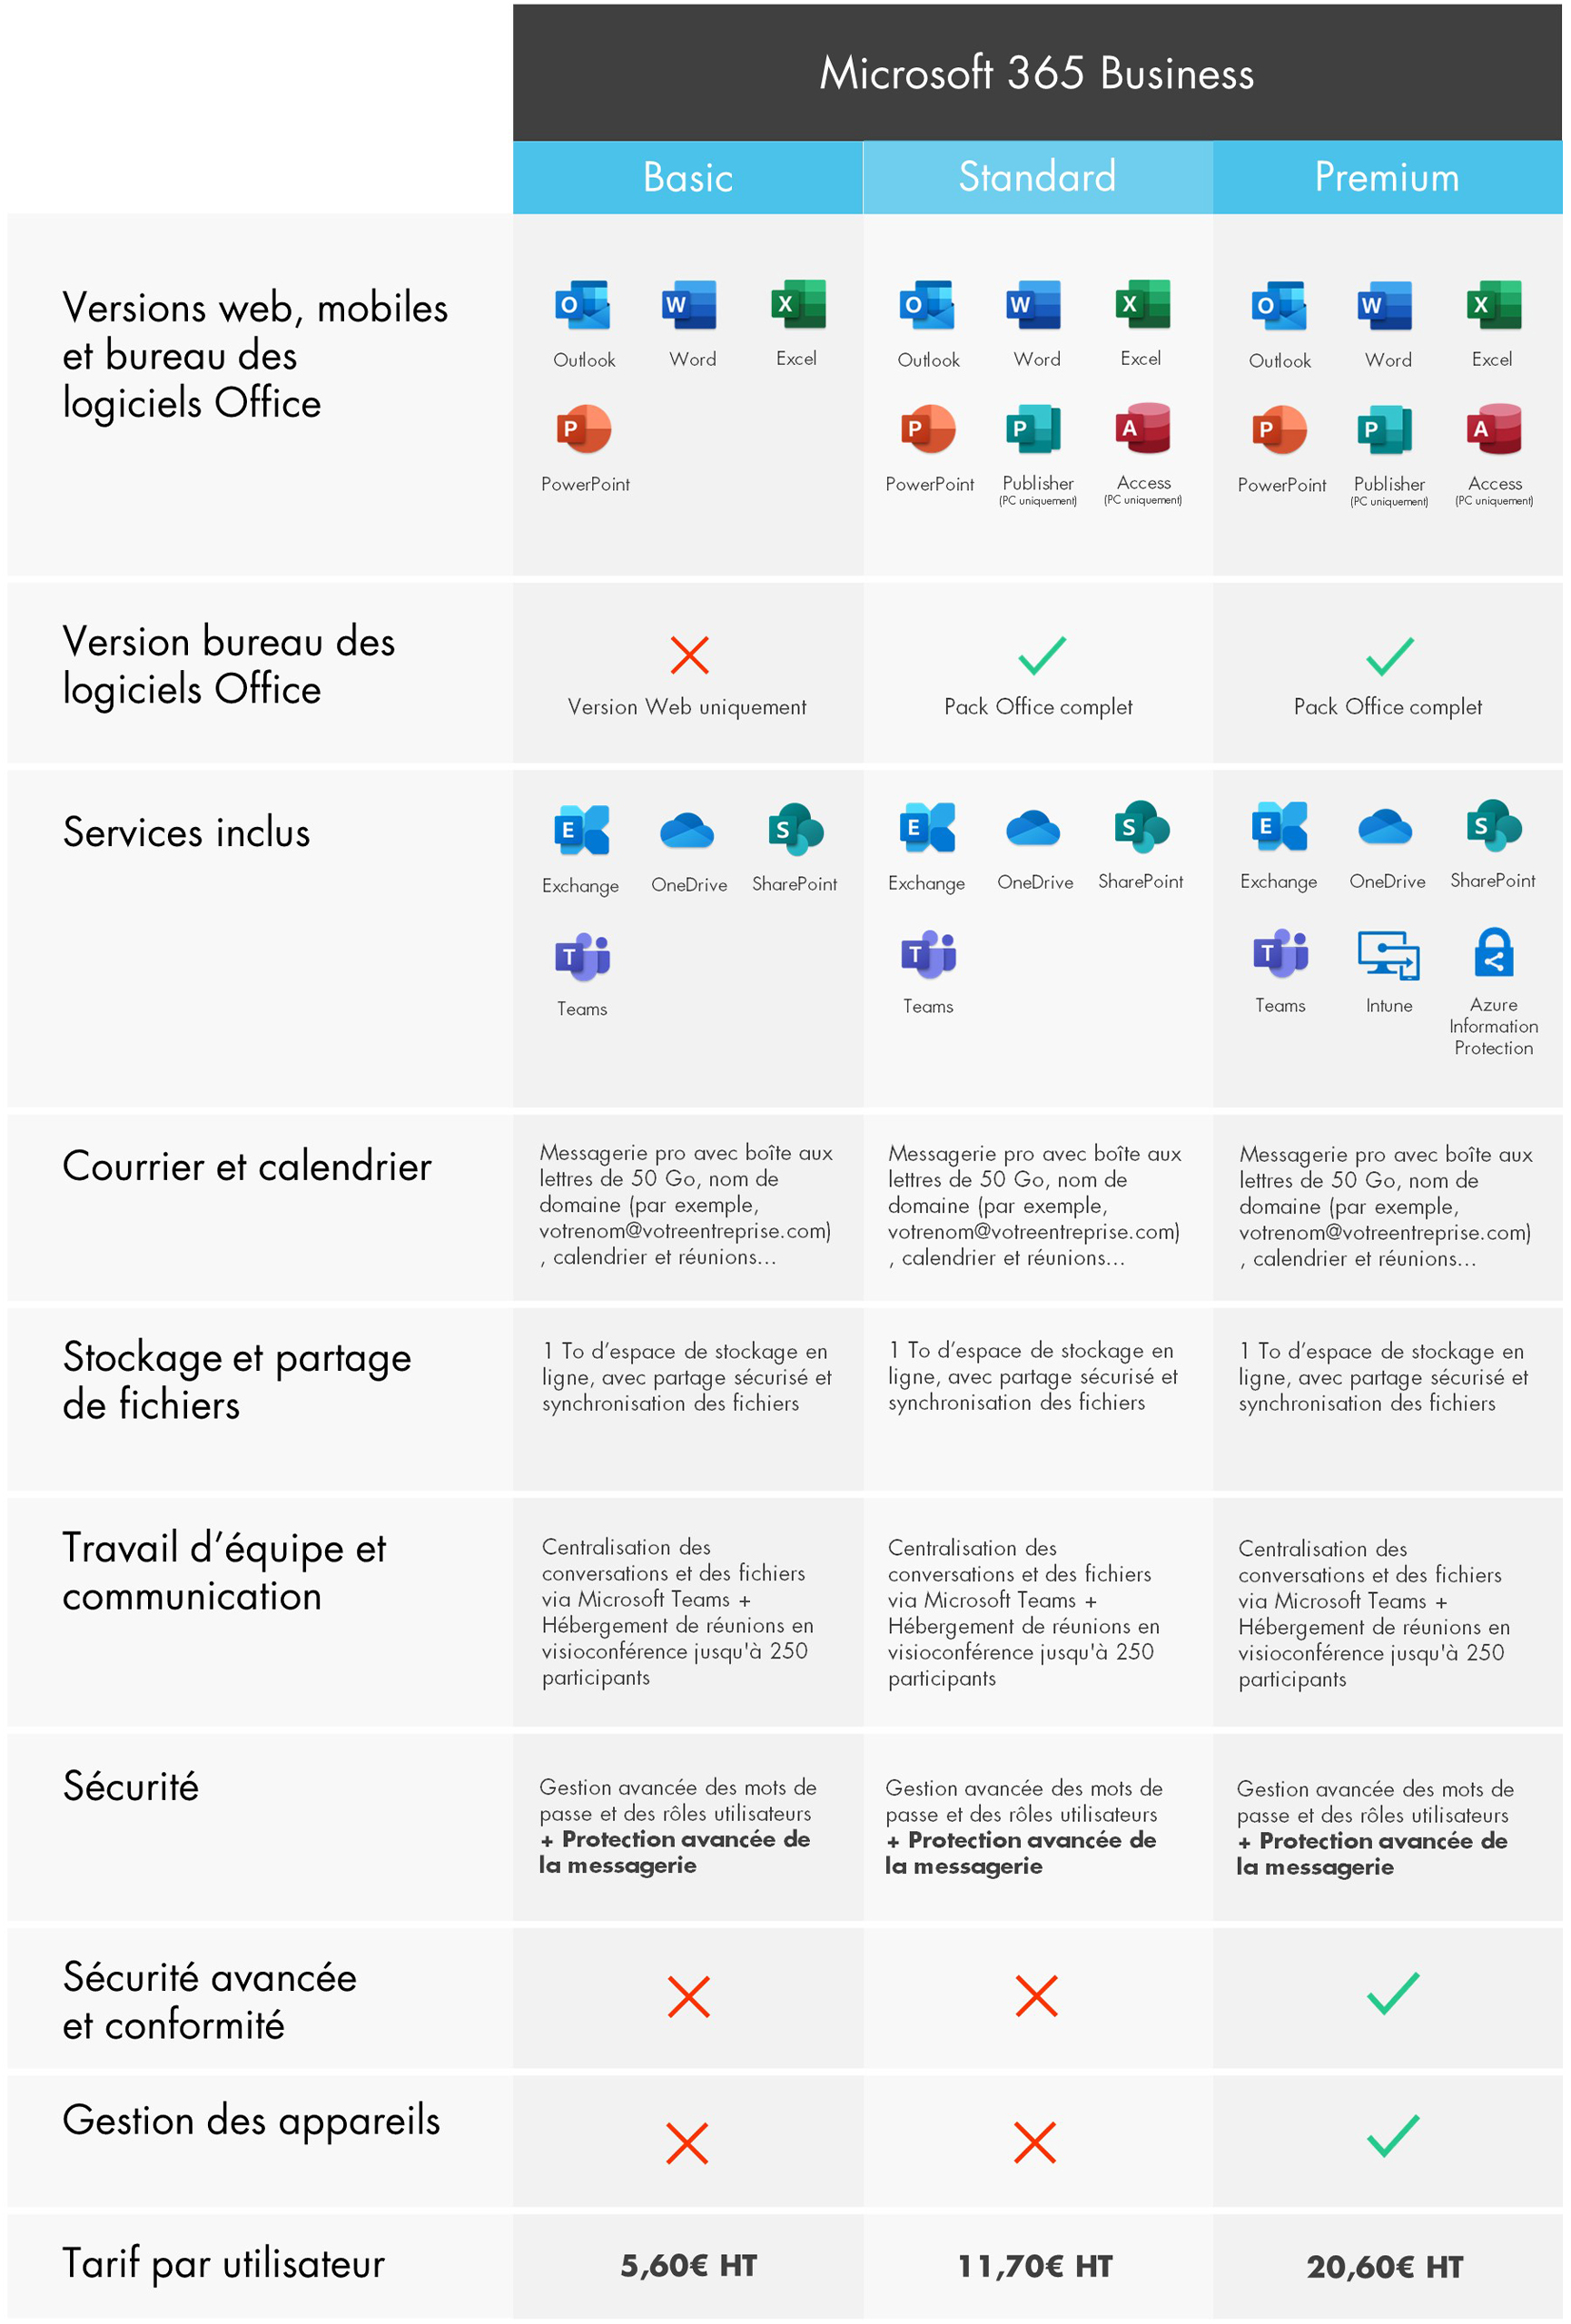 Tableau comparatif des offres Microsoft 365 Business